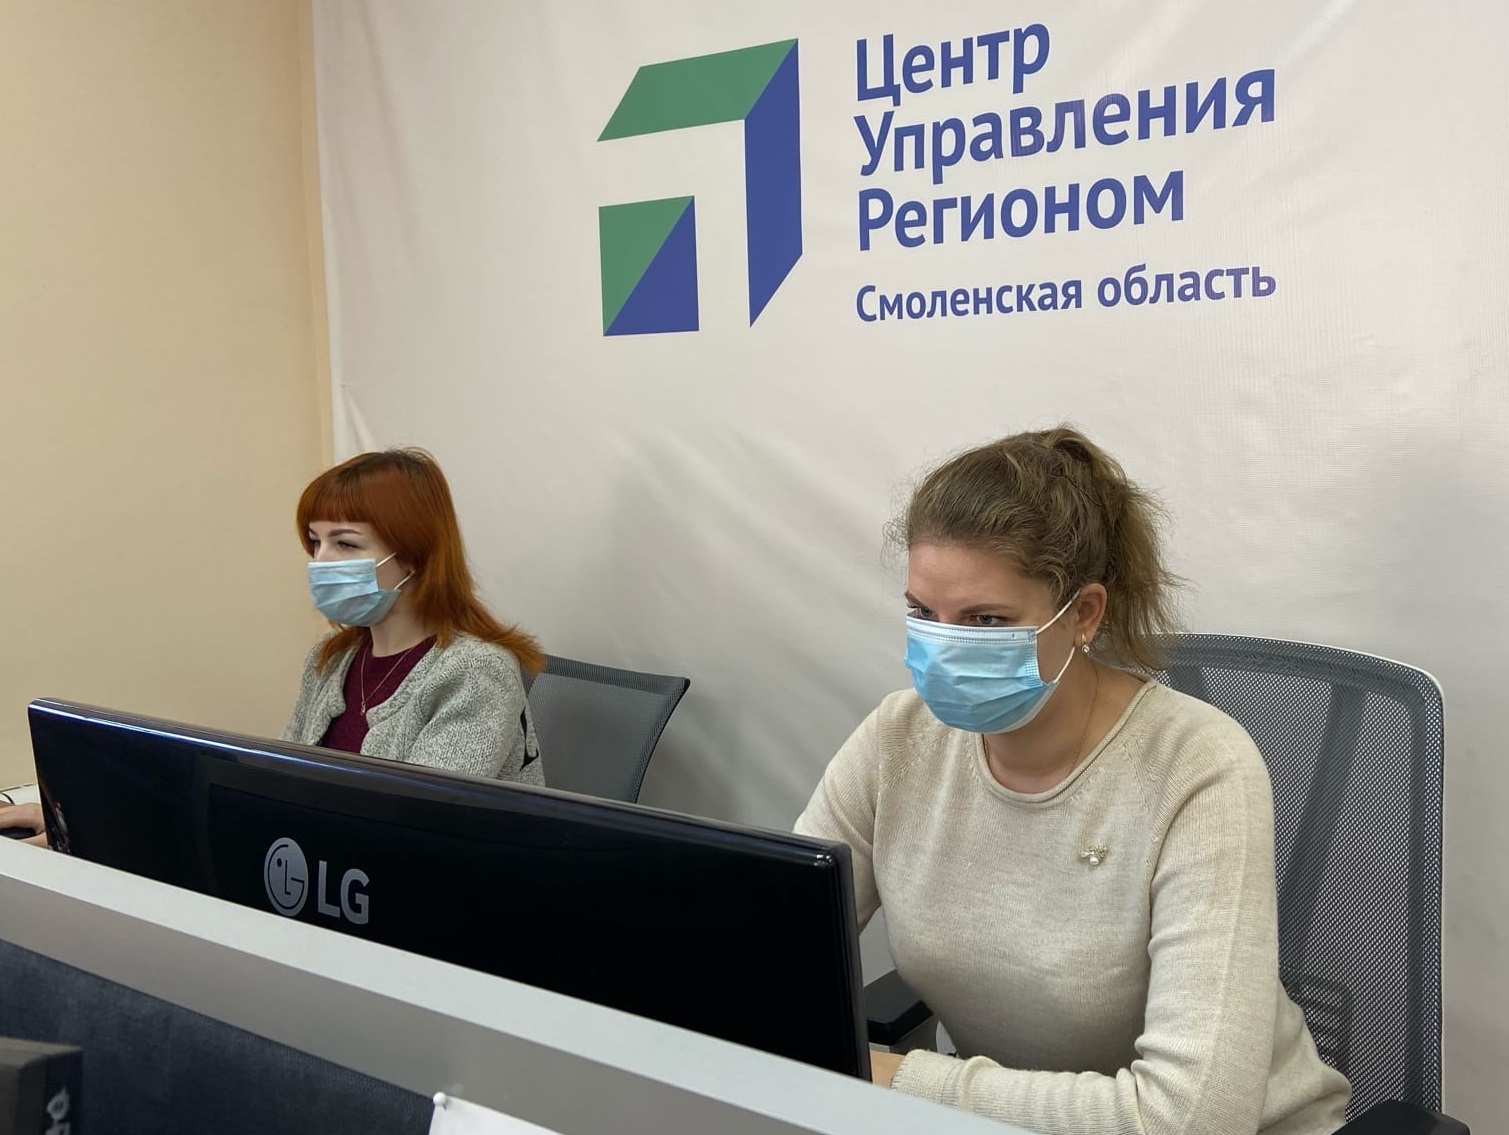 550 сообщений поступило в ЦУР Смоленской области за минувшую неделю